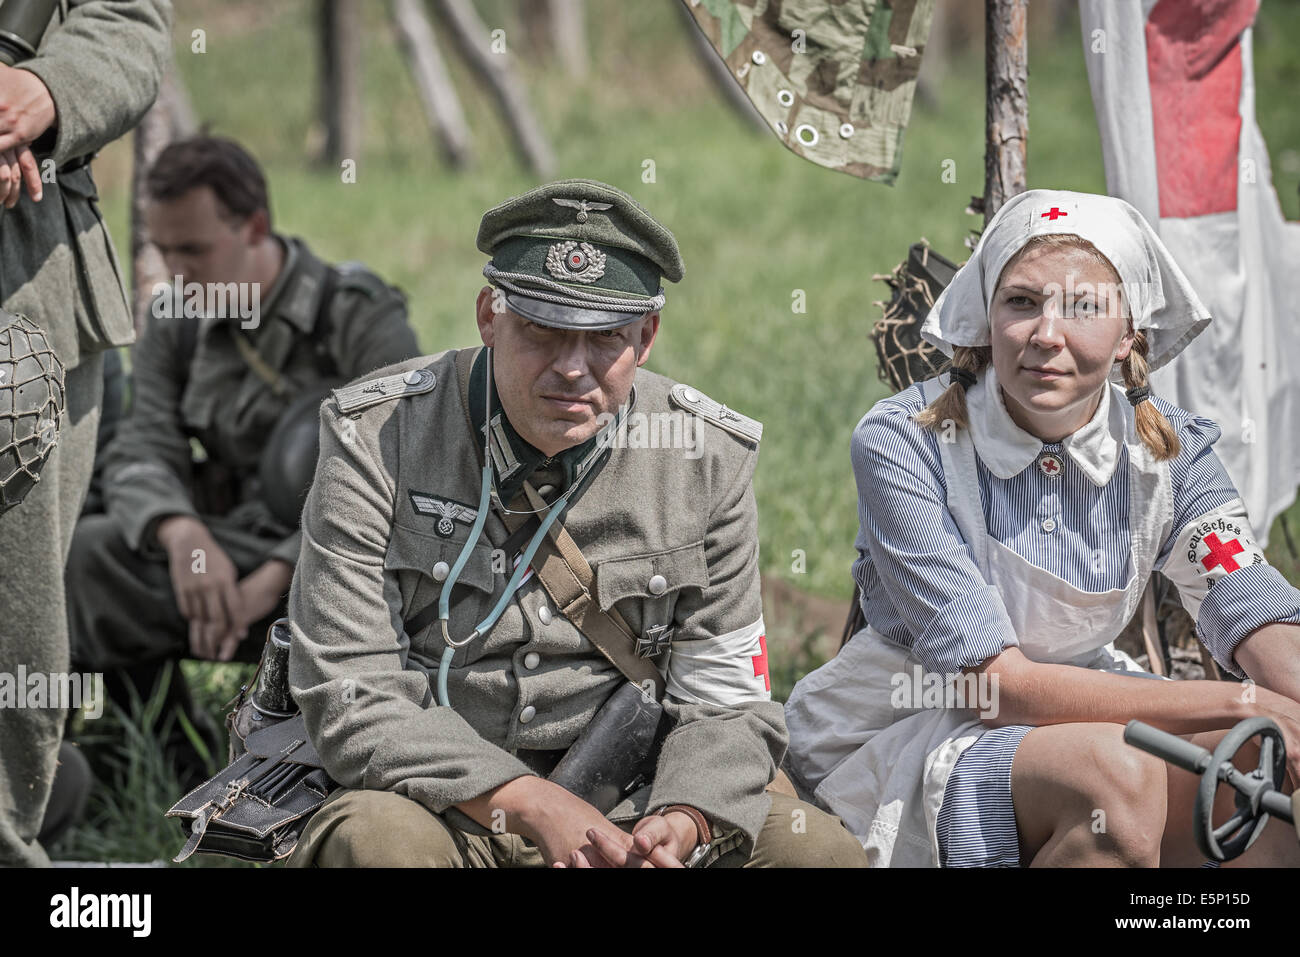 TEKOV, Slowakei - Juli 26,2014: Deutsche Leutnant und eine Krankenschwester auf eine Pause während der Nachstellung des zweiten Weltkriegs kämpft in der Slowakei Stockfoto